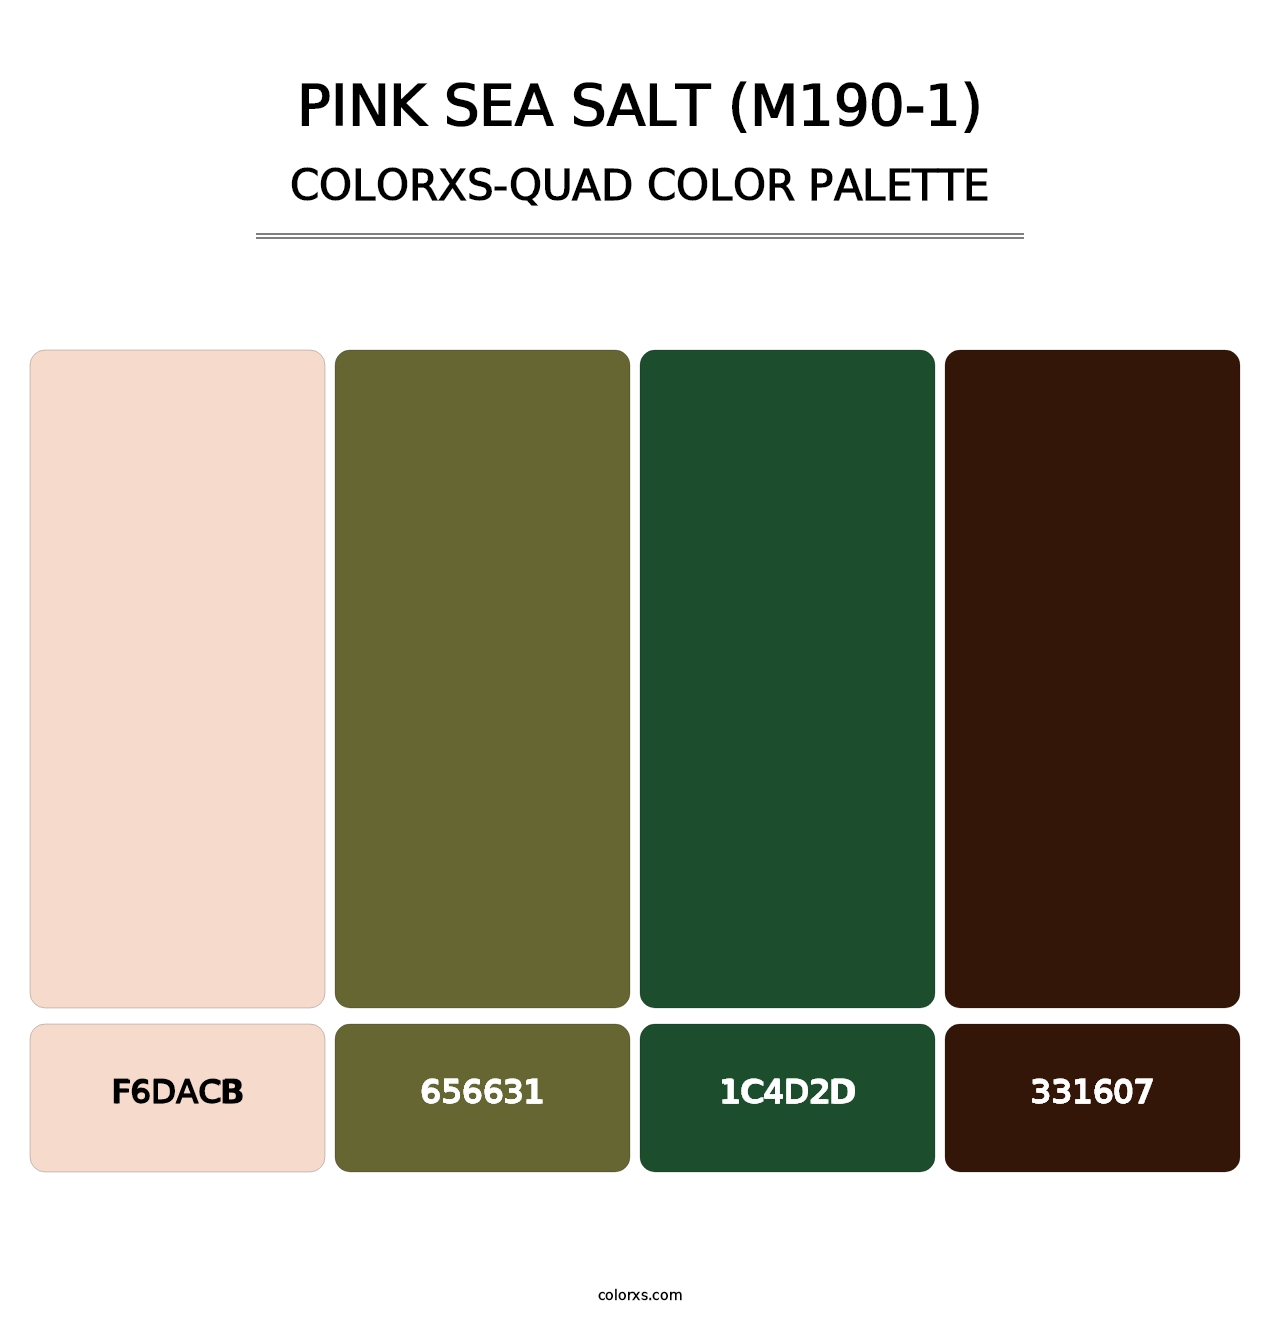 Pink Sea Salt (M190-1) - Colorxs Quad Palette